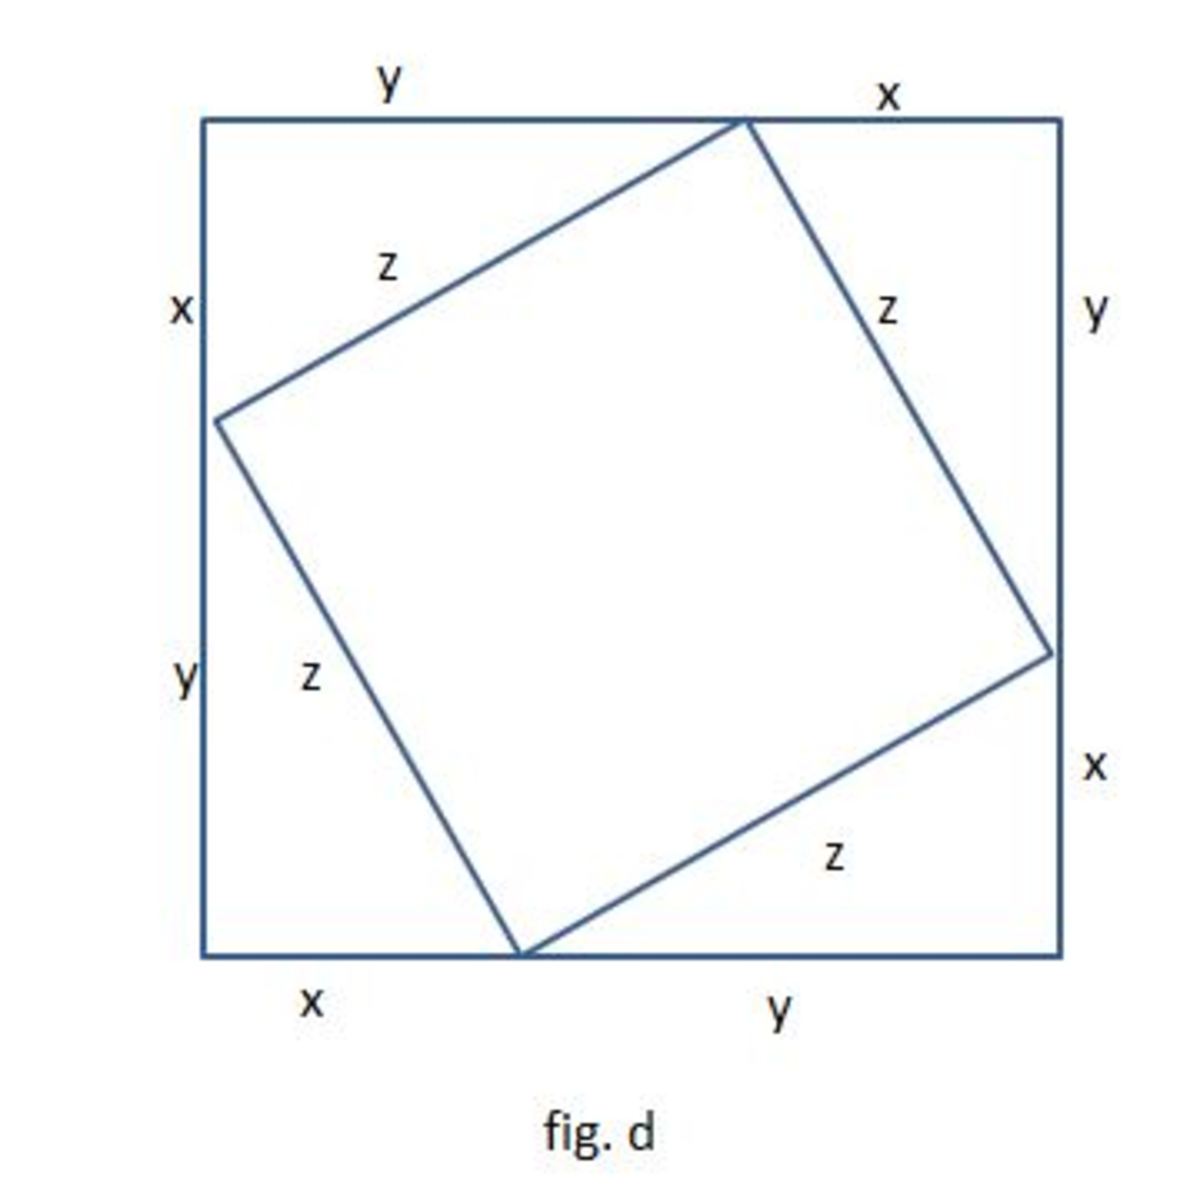 phythagoras-theorem-x2y2-z2-but-why